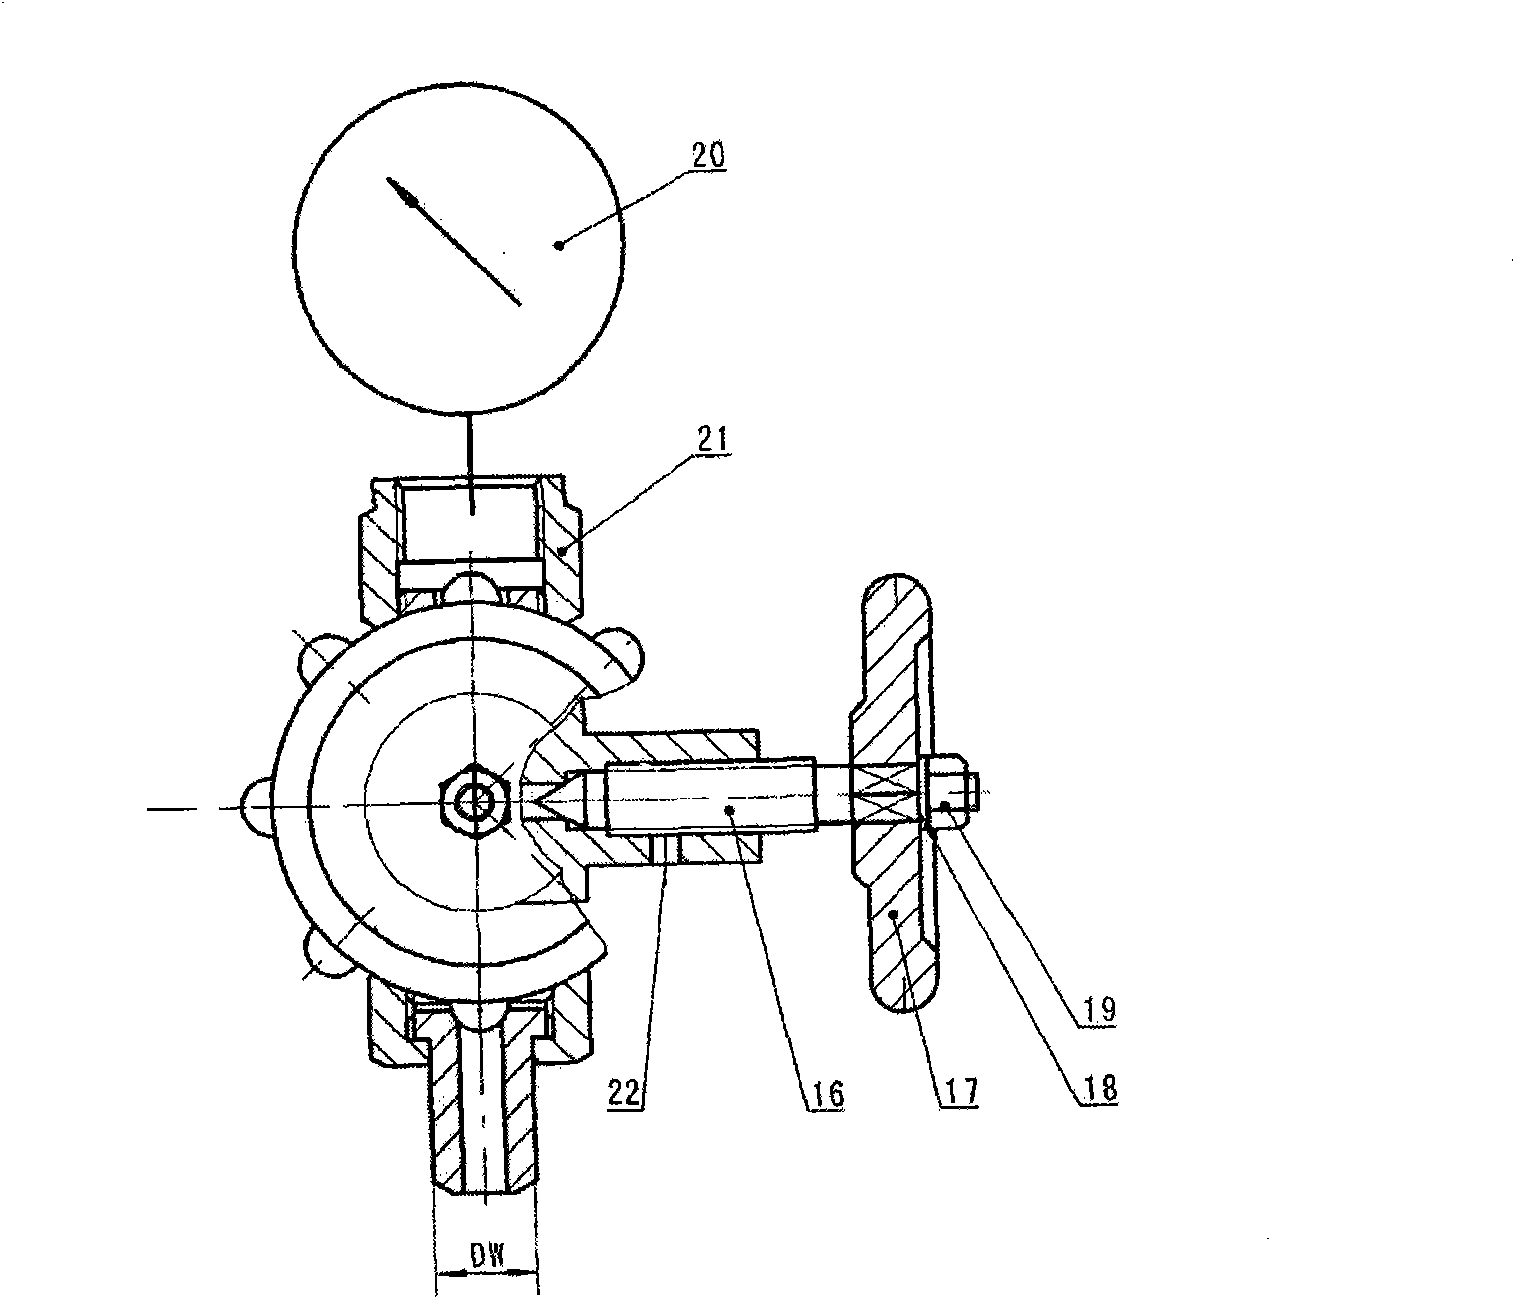 Vent stop valve of pressure gauge